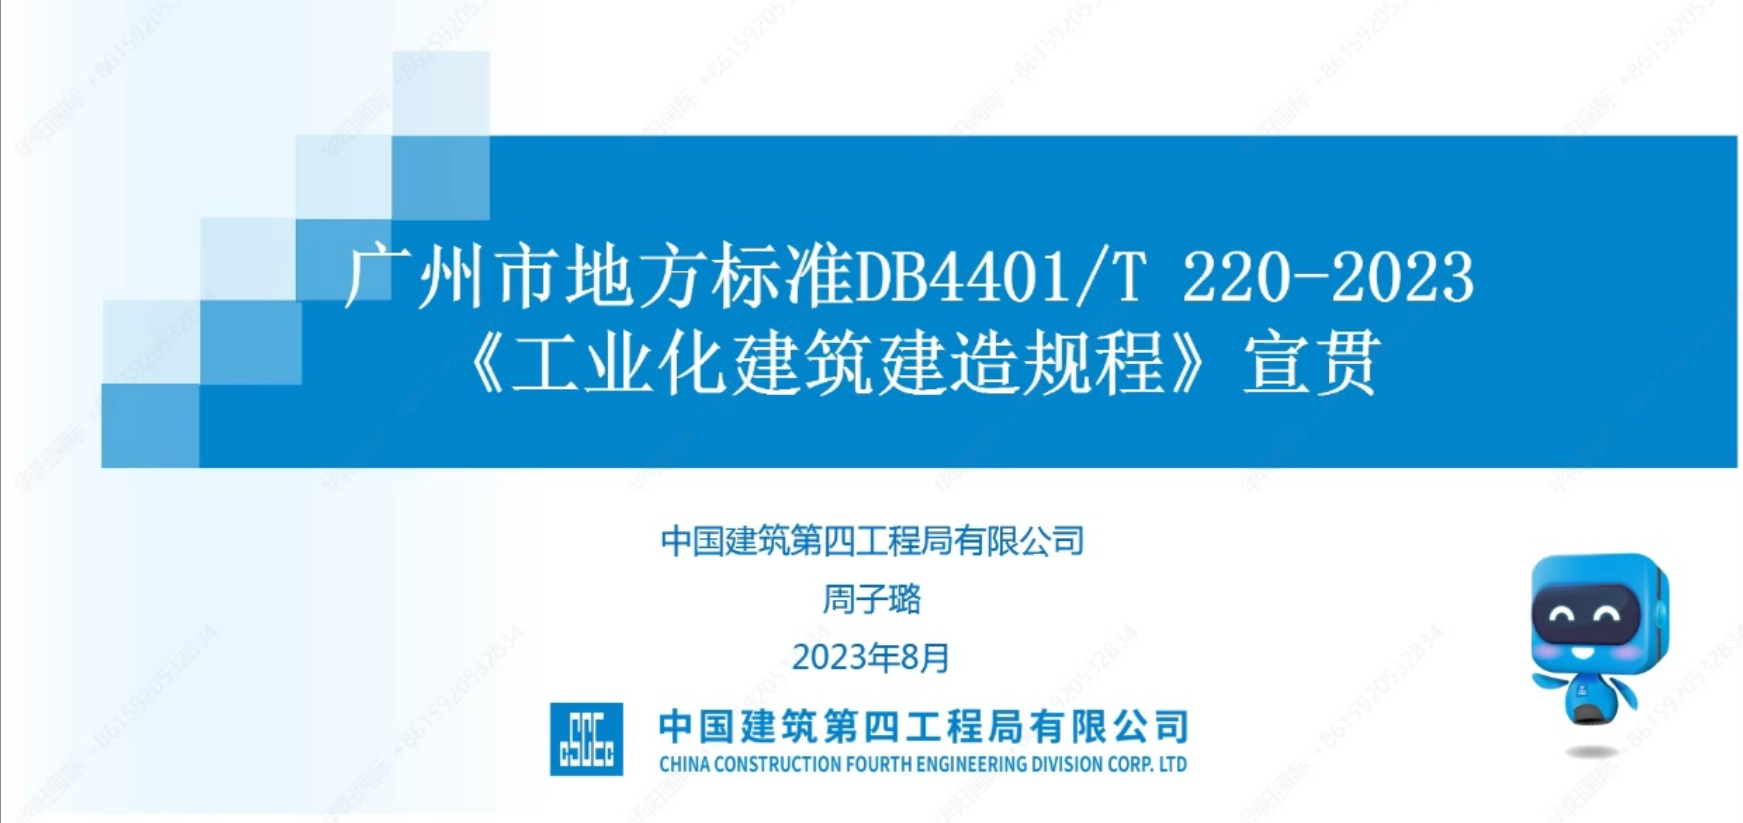 广州市地方标准DB4401/T 220-2023《工业化建筑建造规程》宣贯